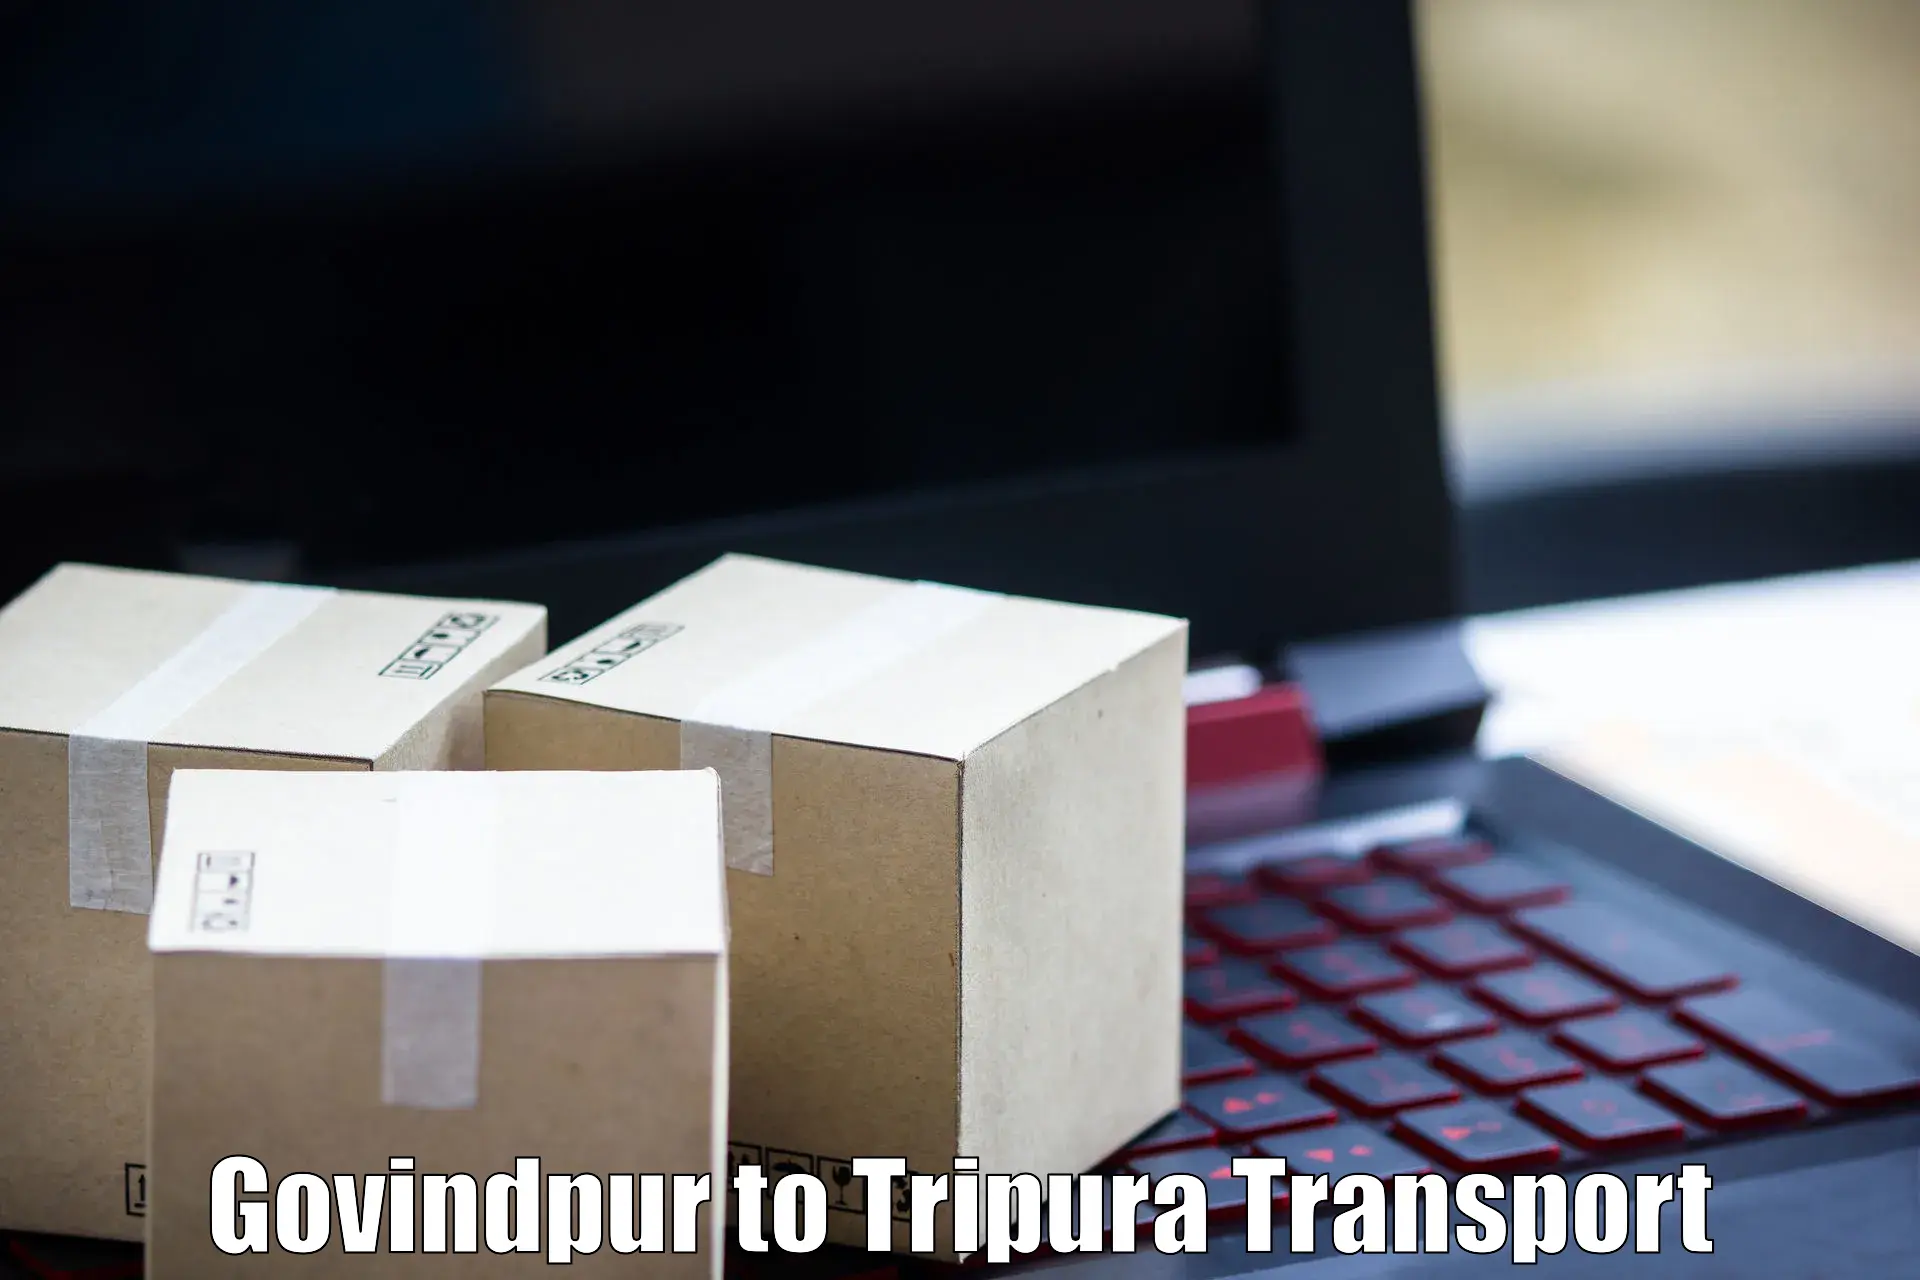 Container transport service Govindpur to Amarpur